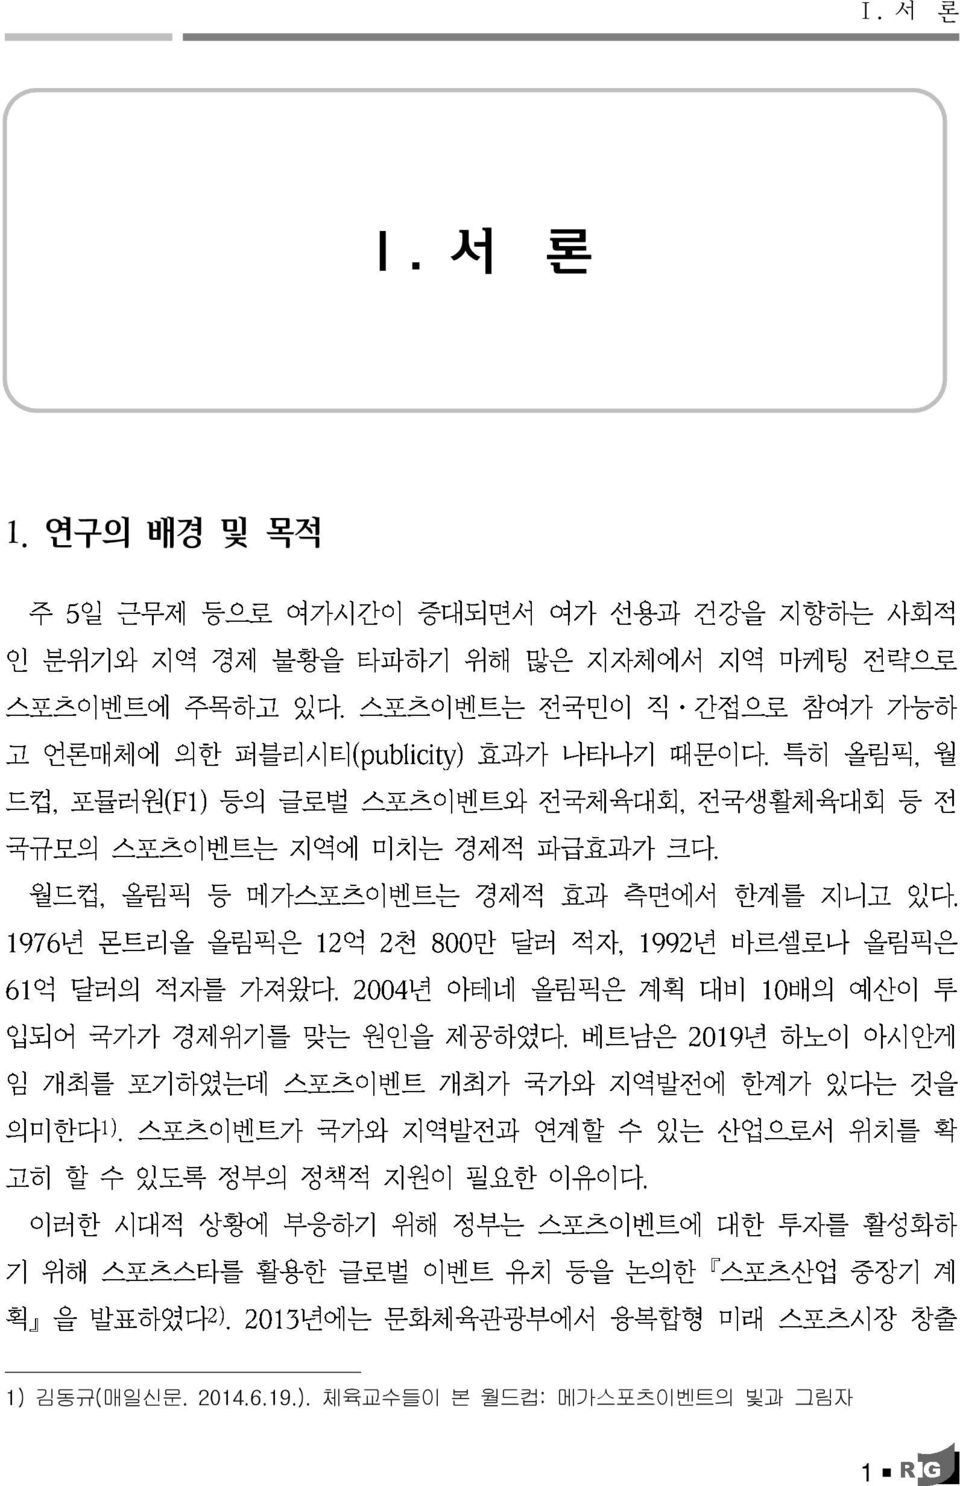 매일신문. 2014.6.19.).